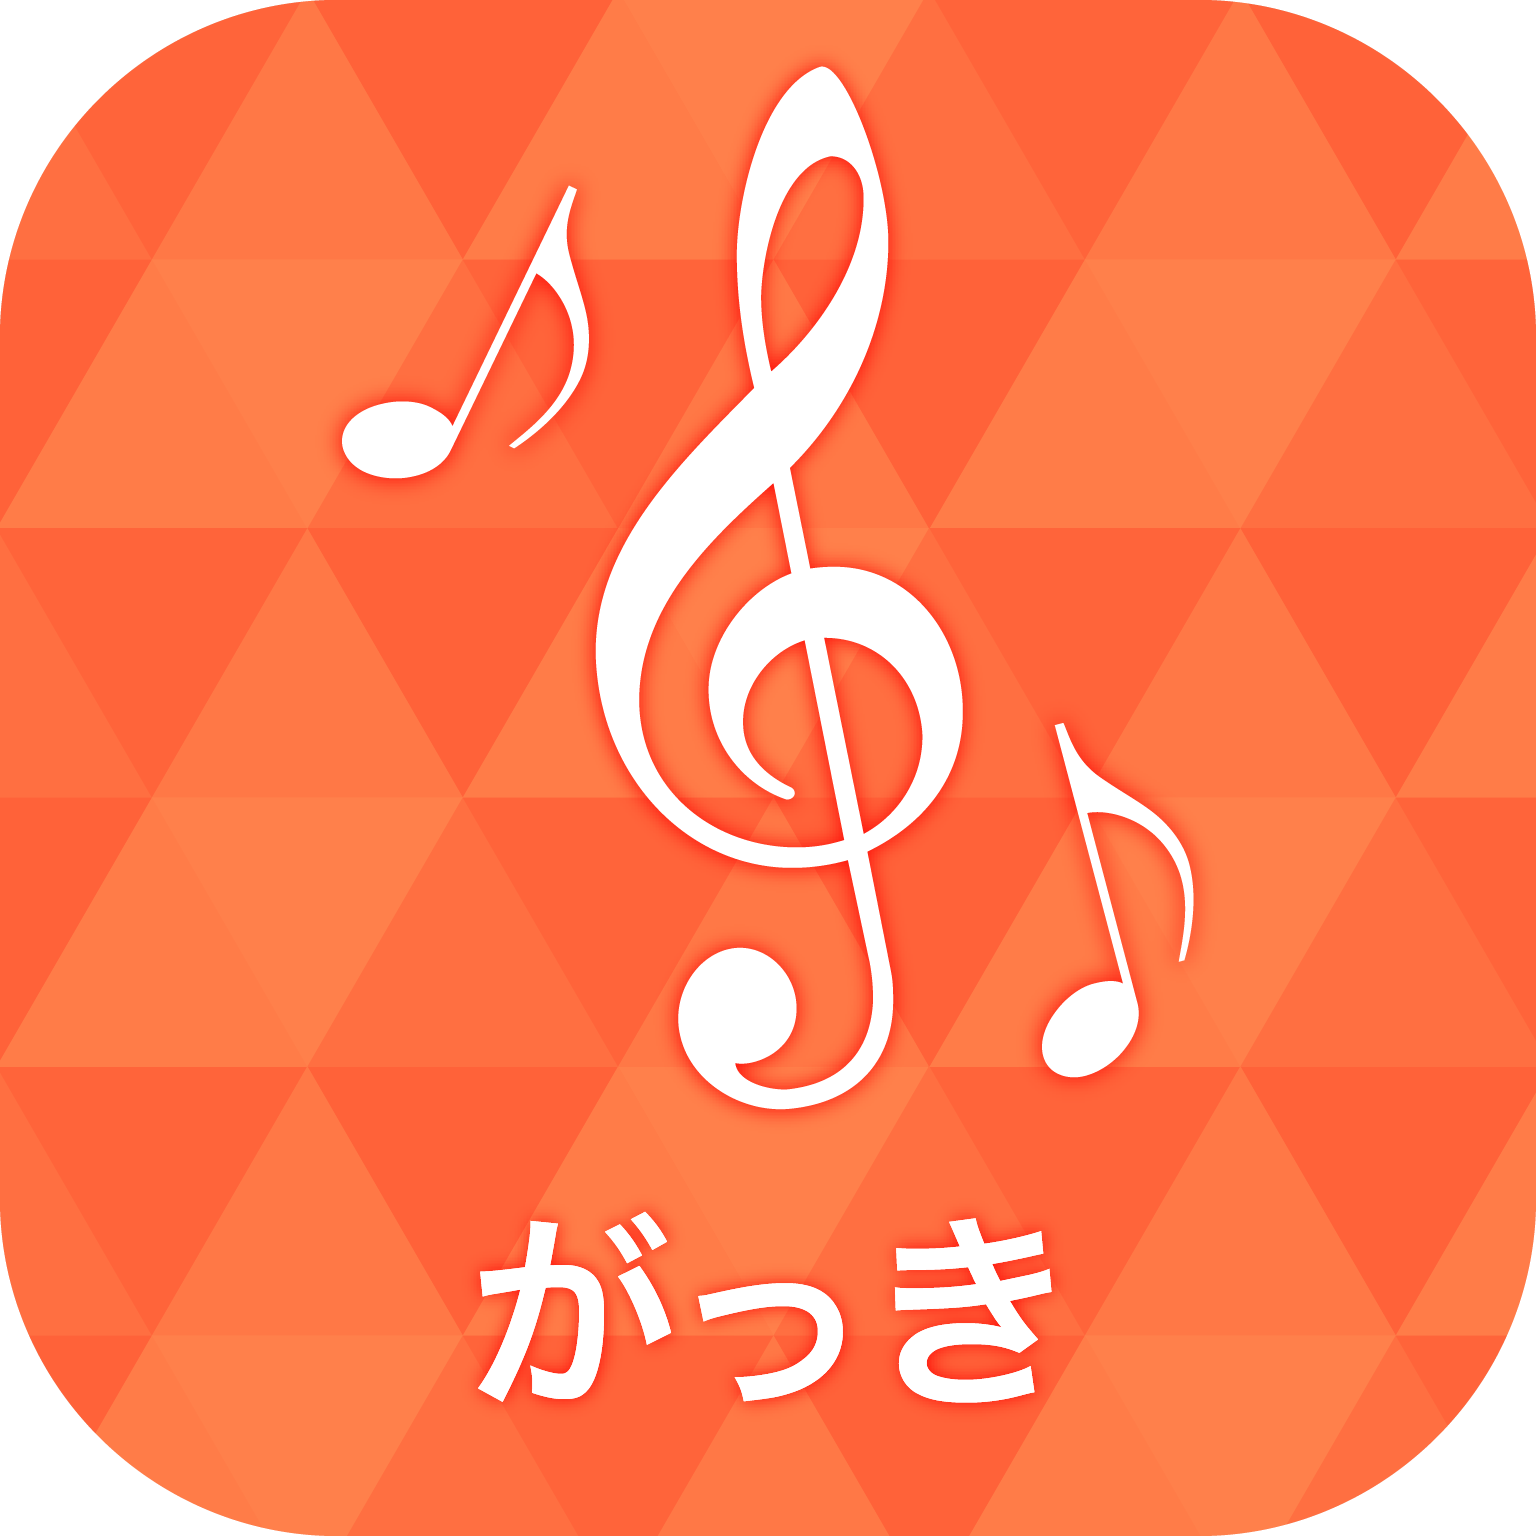 楽器アプリ